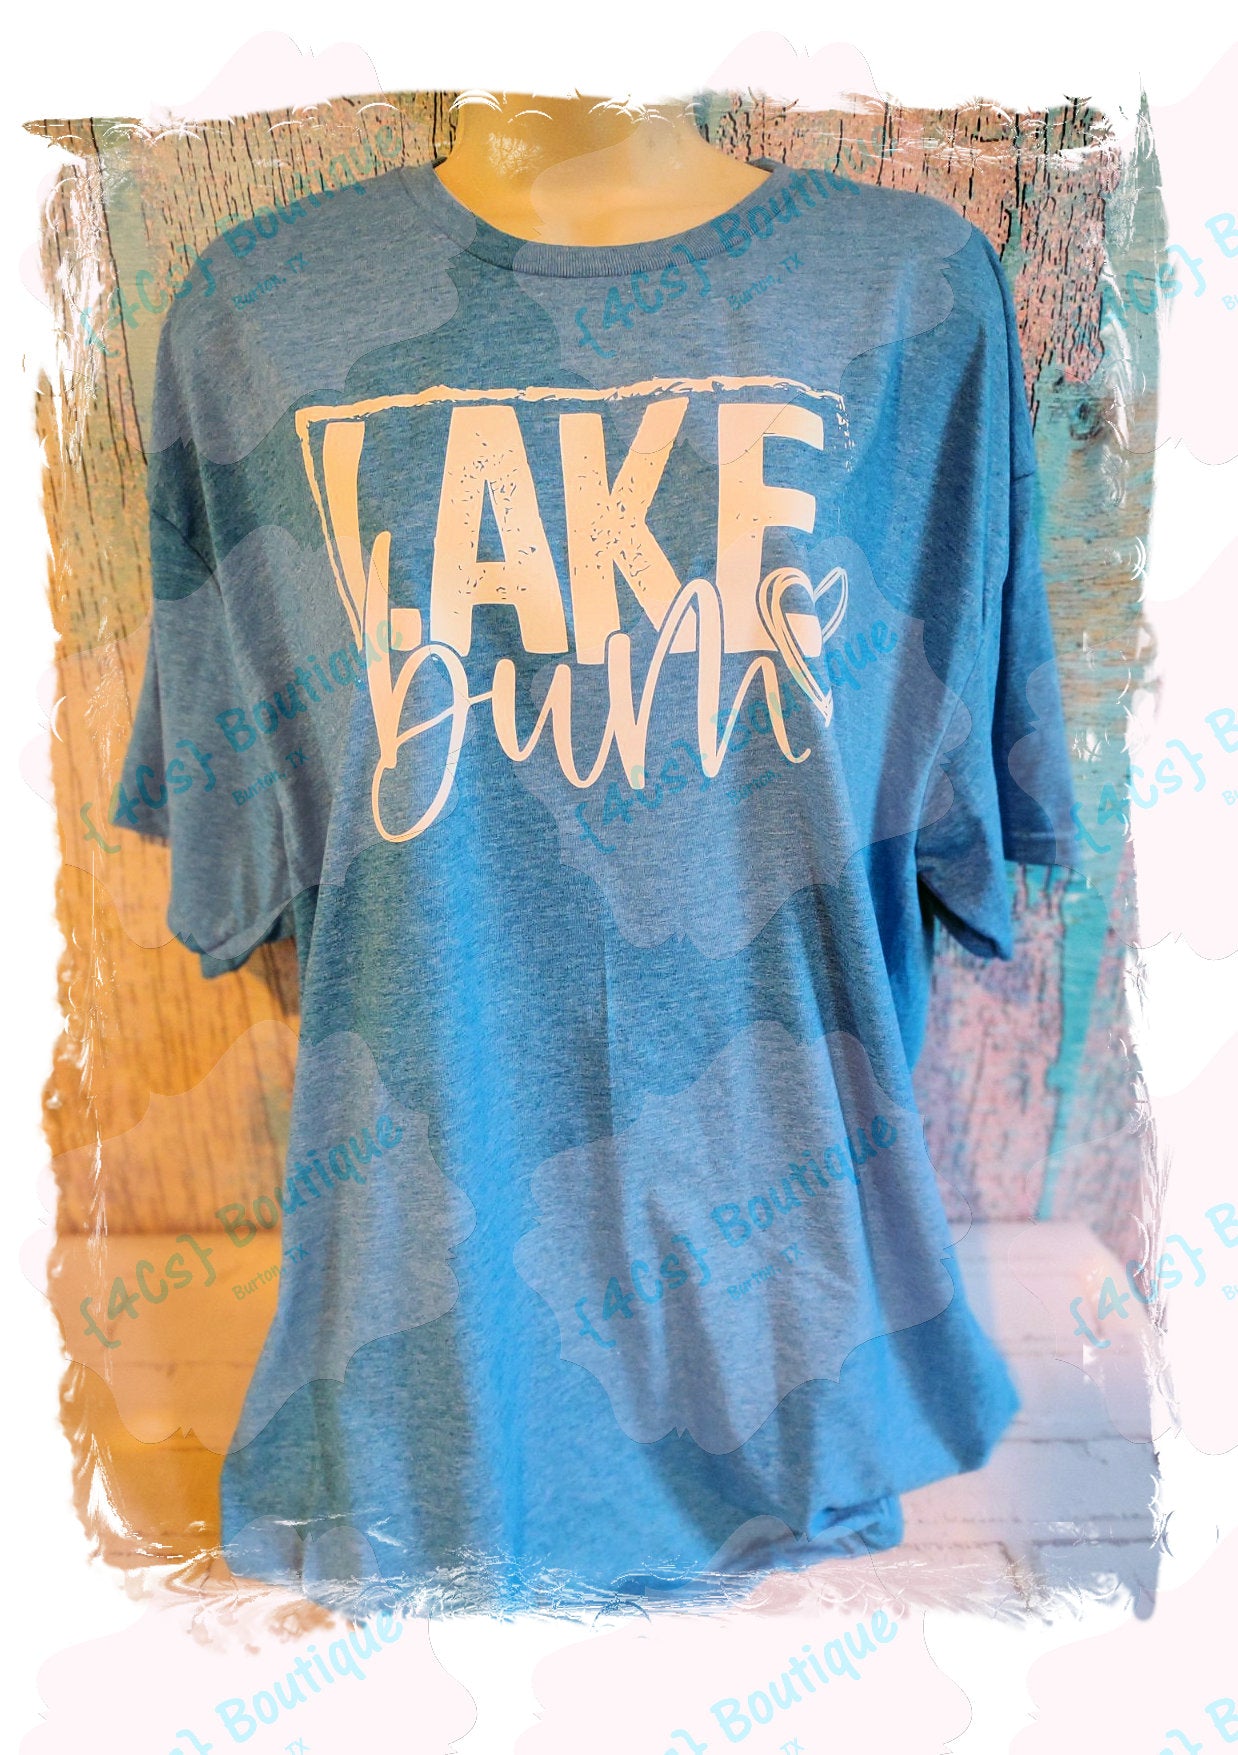 Lake Bum Shirt